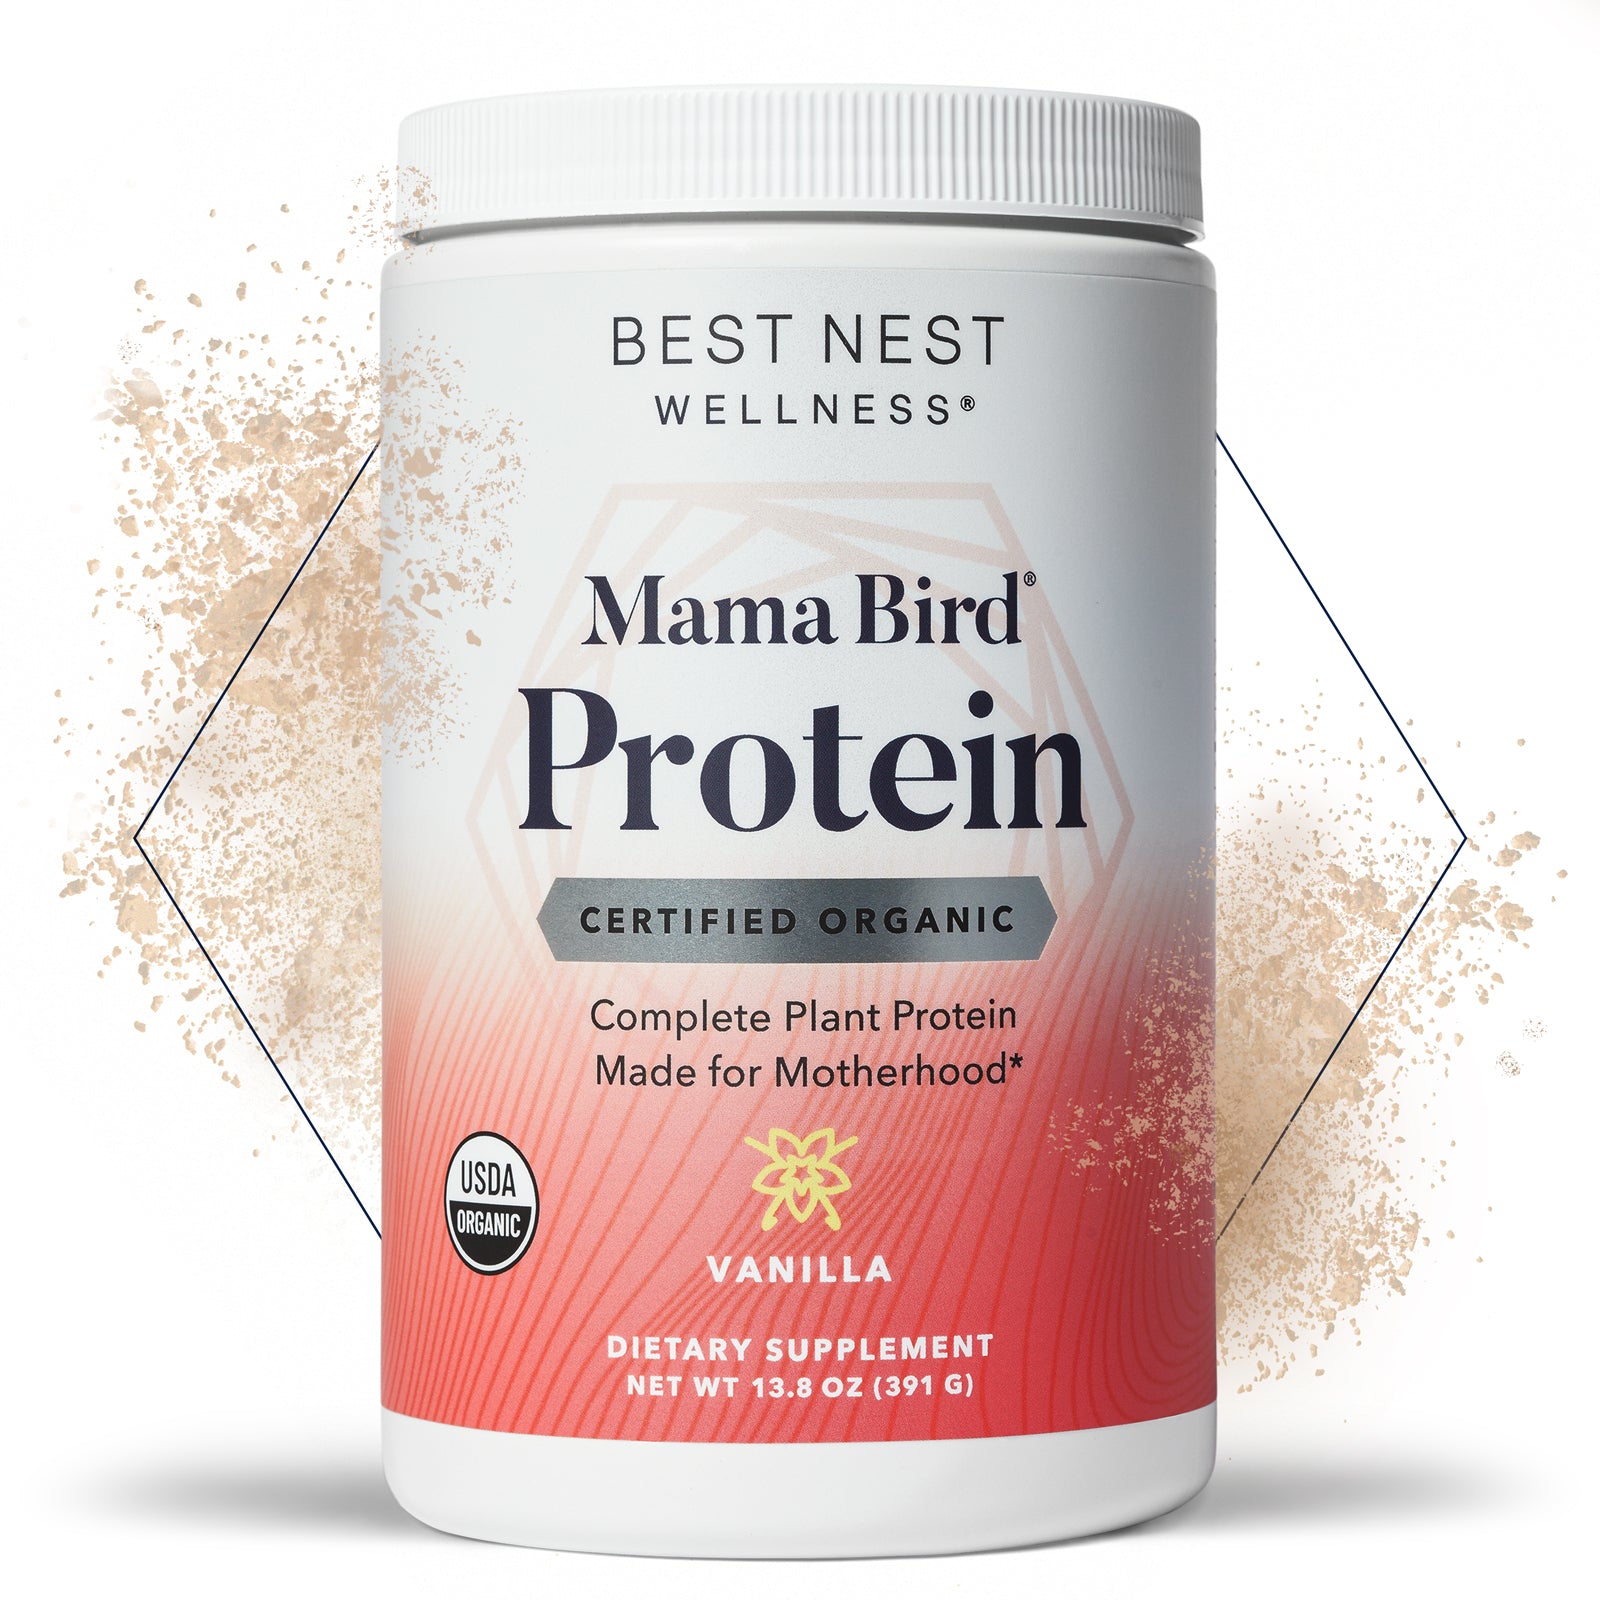 Mama Bird® Protein Powder